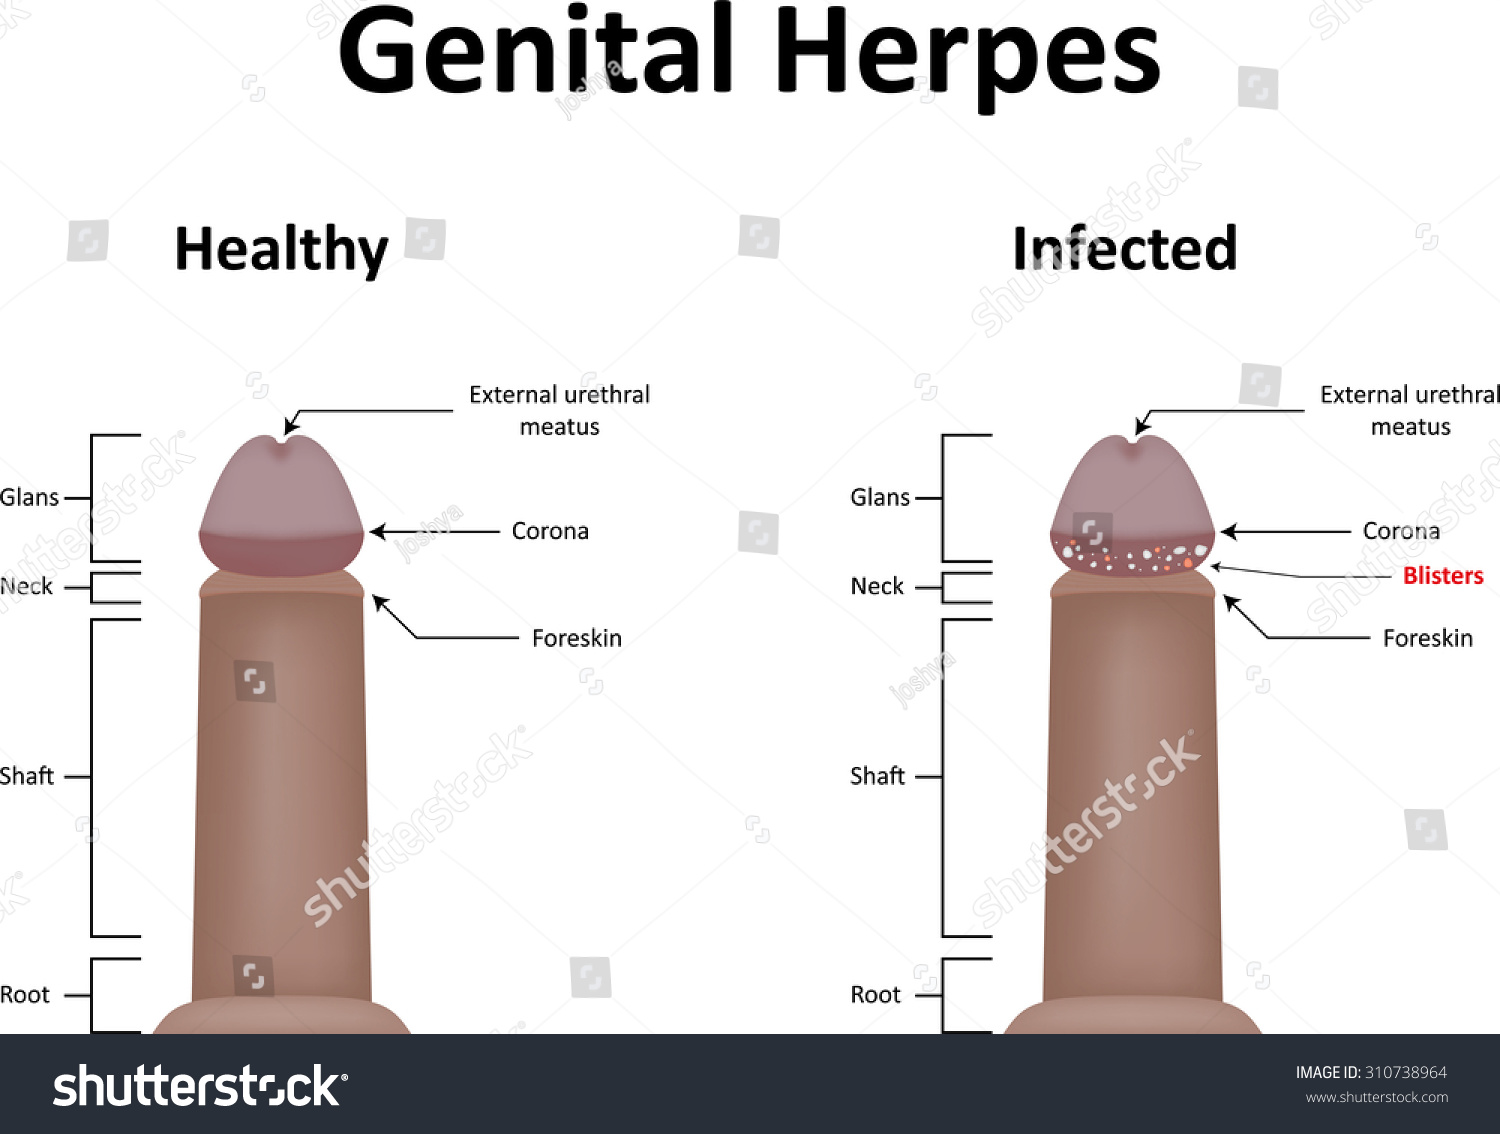 Head of penis wrinkled - Herpes - MedHelp